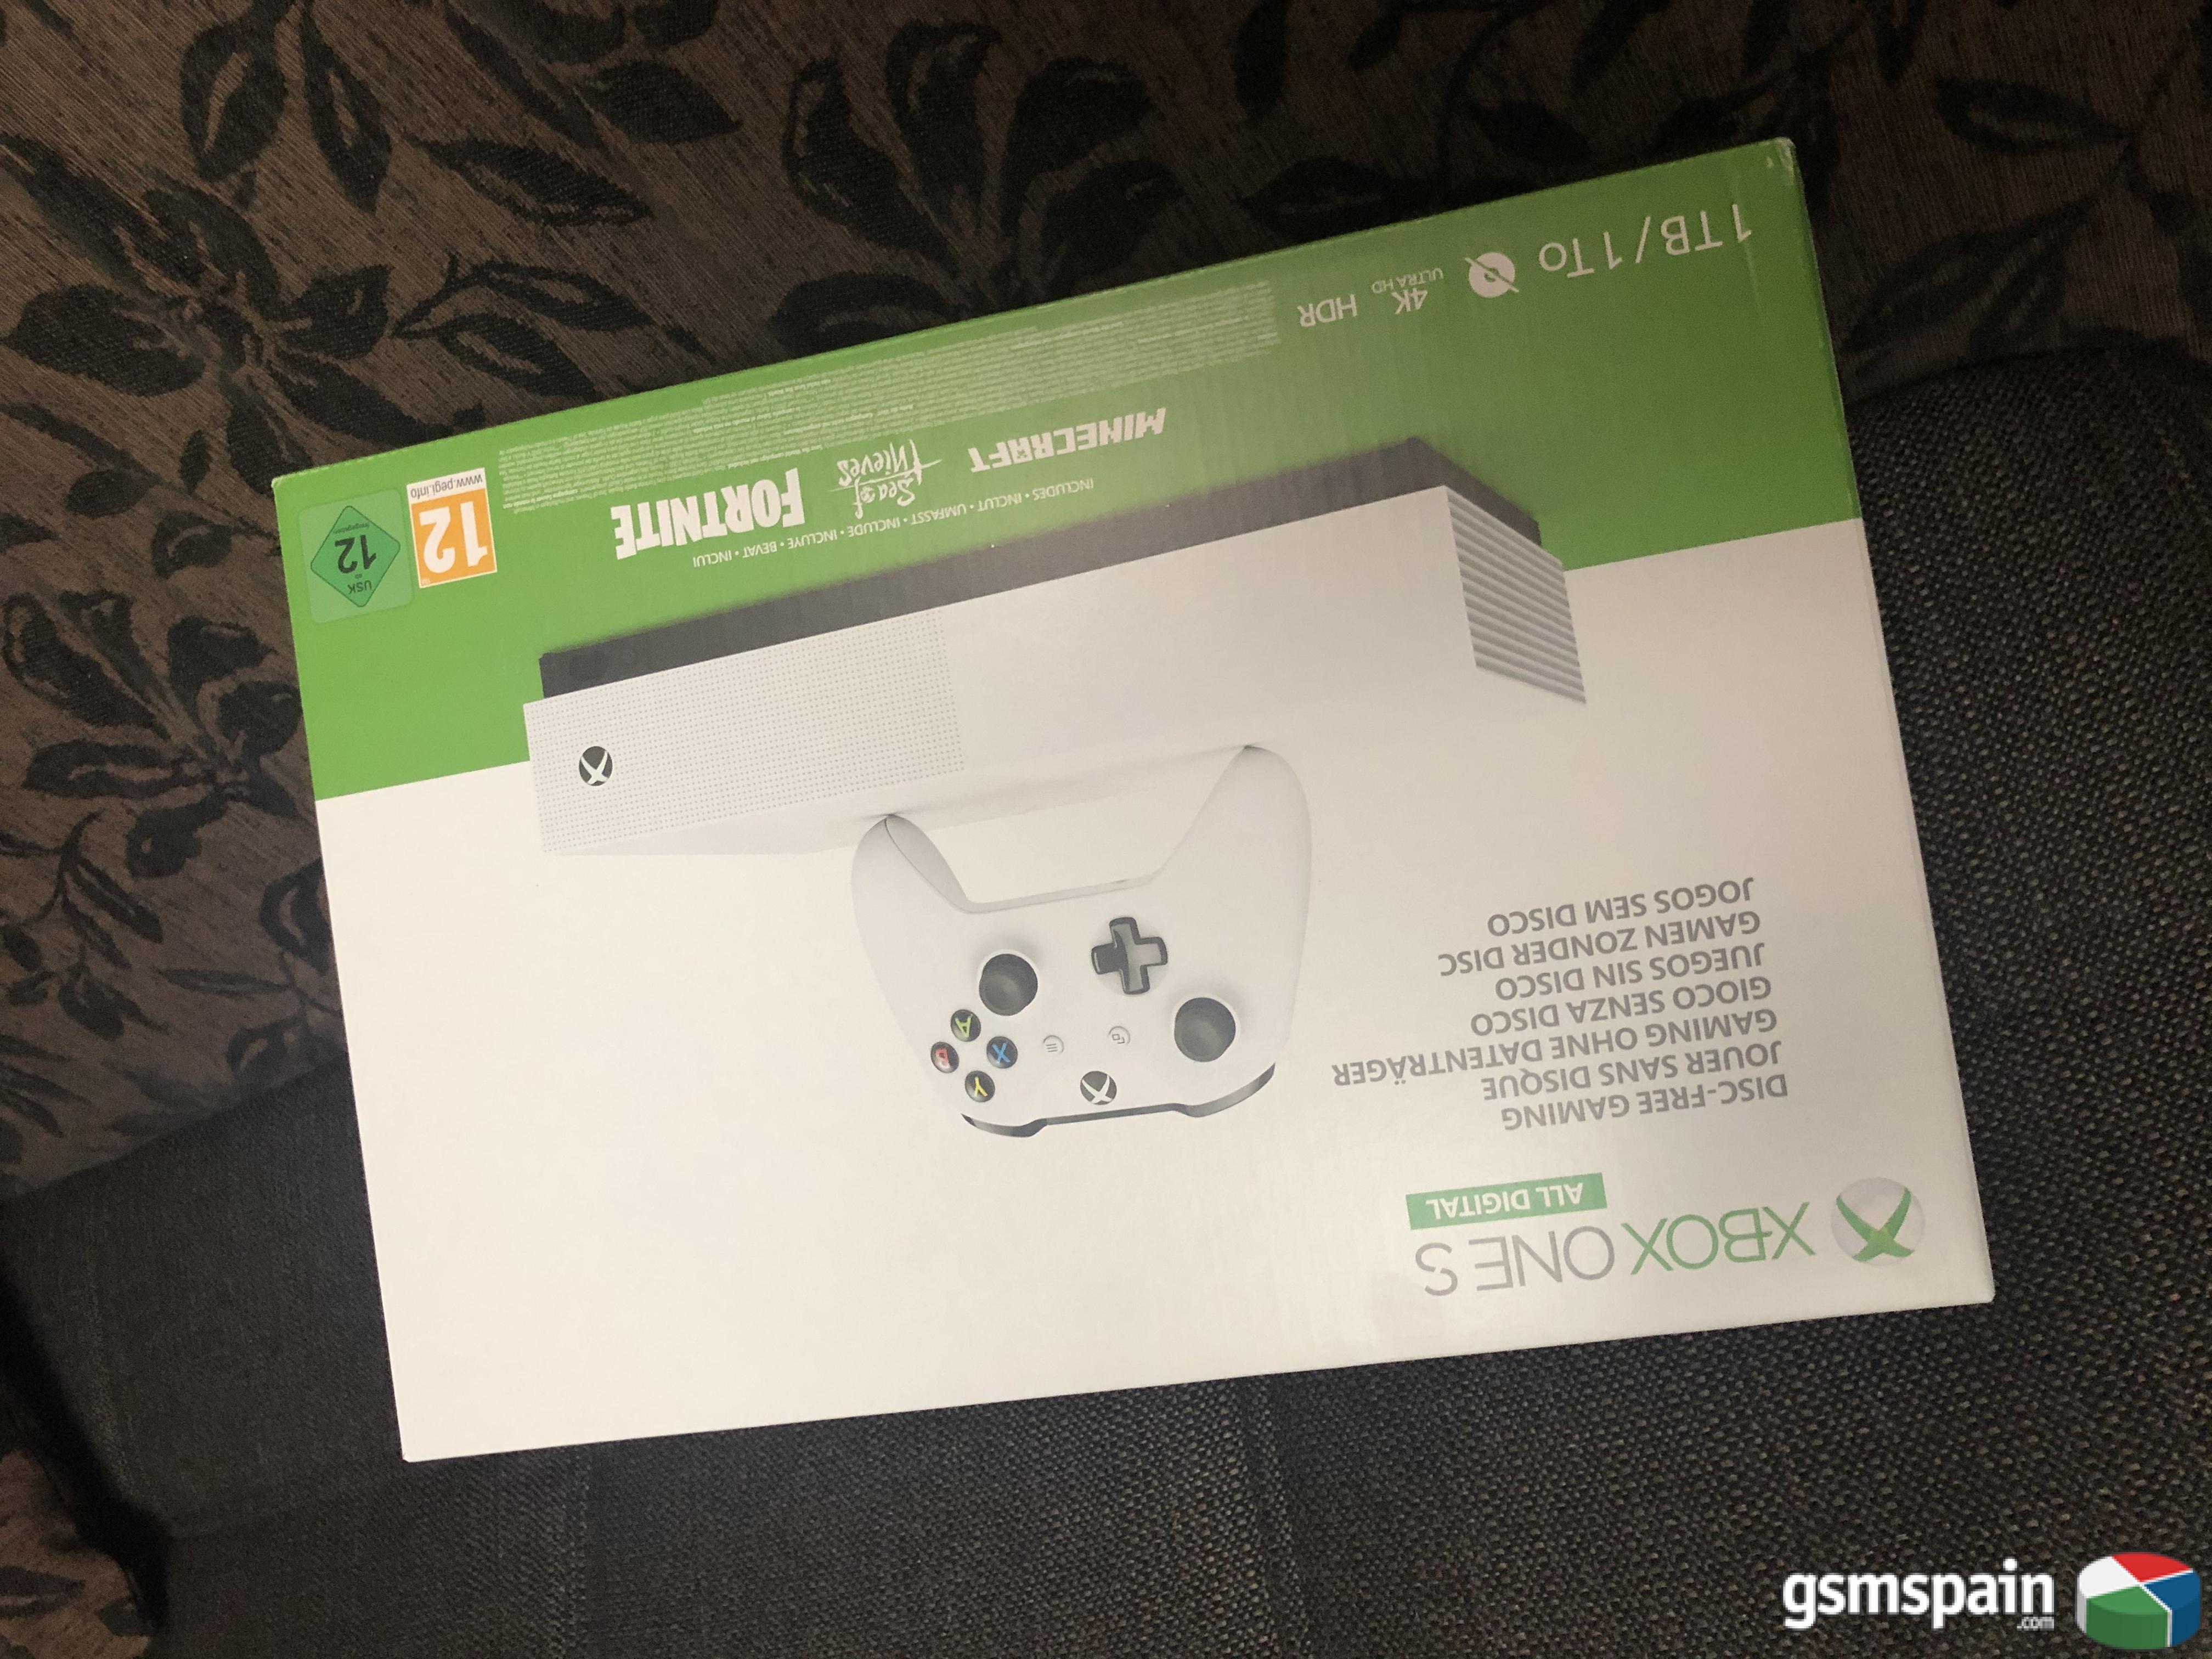 [VENDO] Xbox one s all digital 1tb precintada 140 g.i